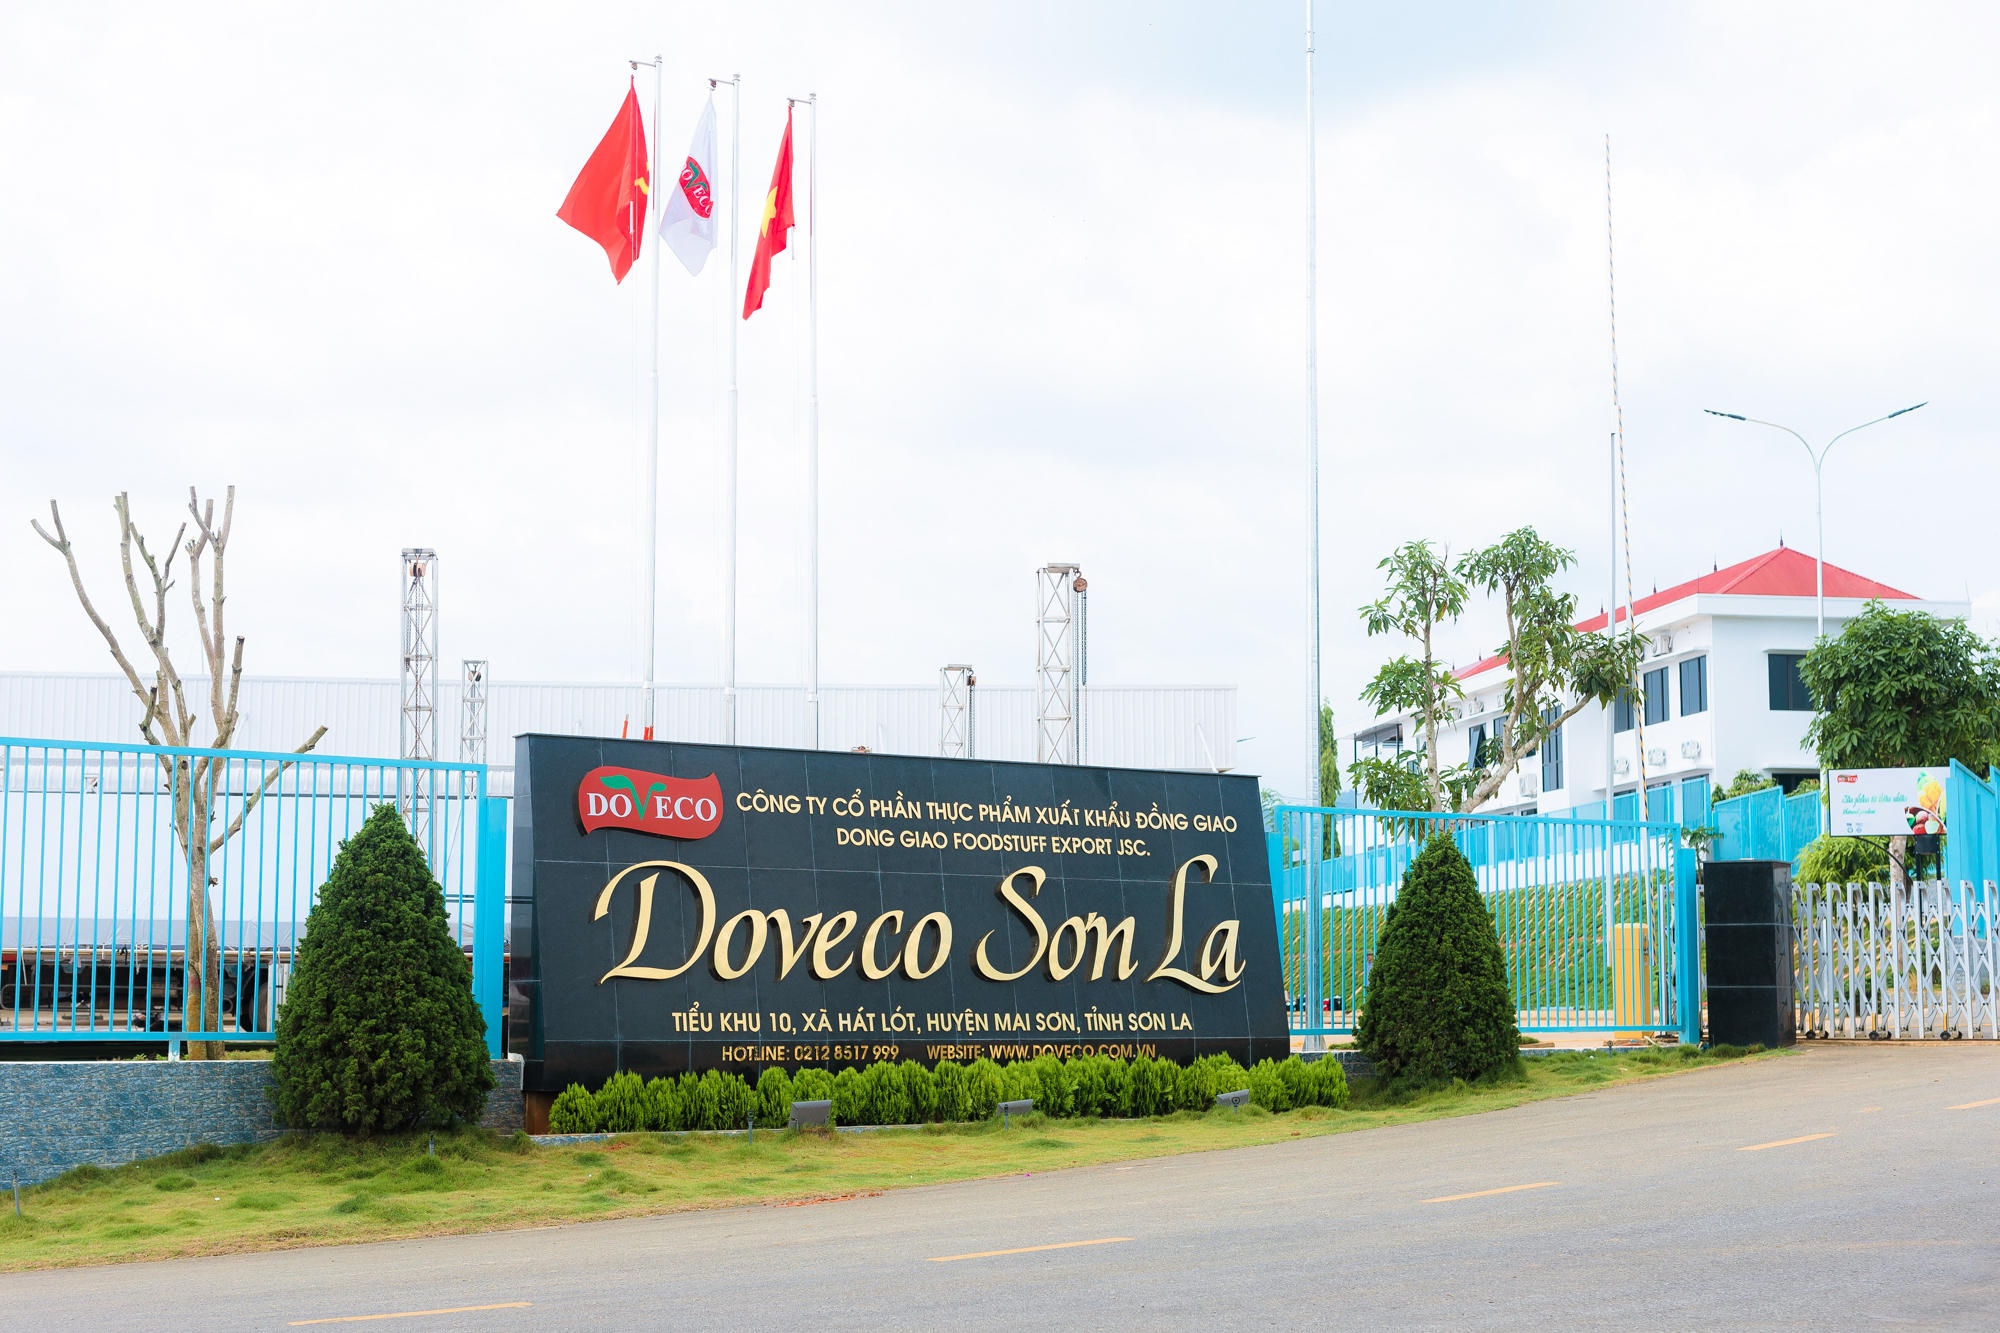 Theo quy mô thiết kế, công suất của Doveco Sơn La đạt 52.000 tấn sản phẩm chế biến/năm. Ảnh: Tùng Đinh.